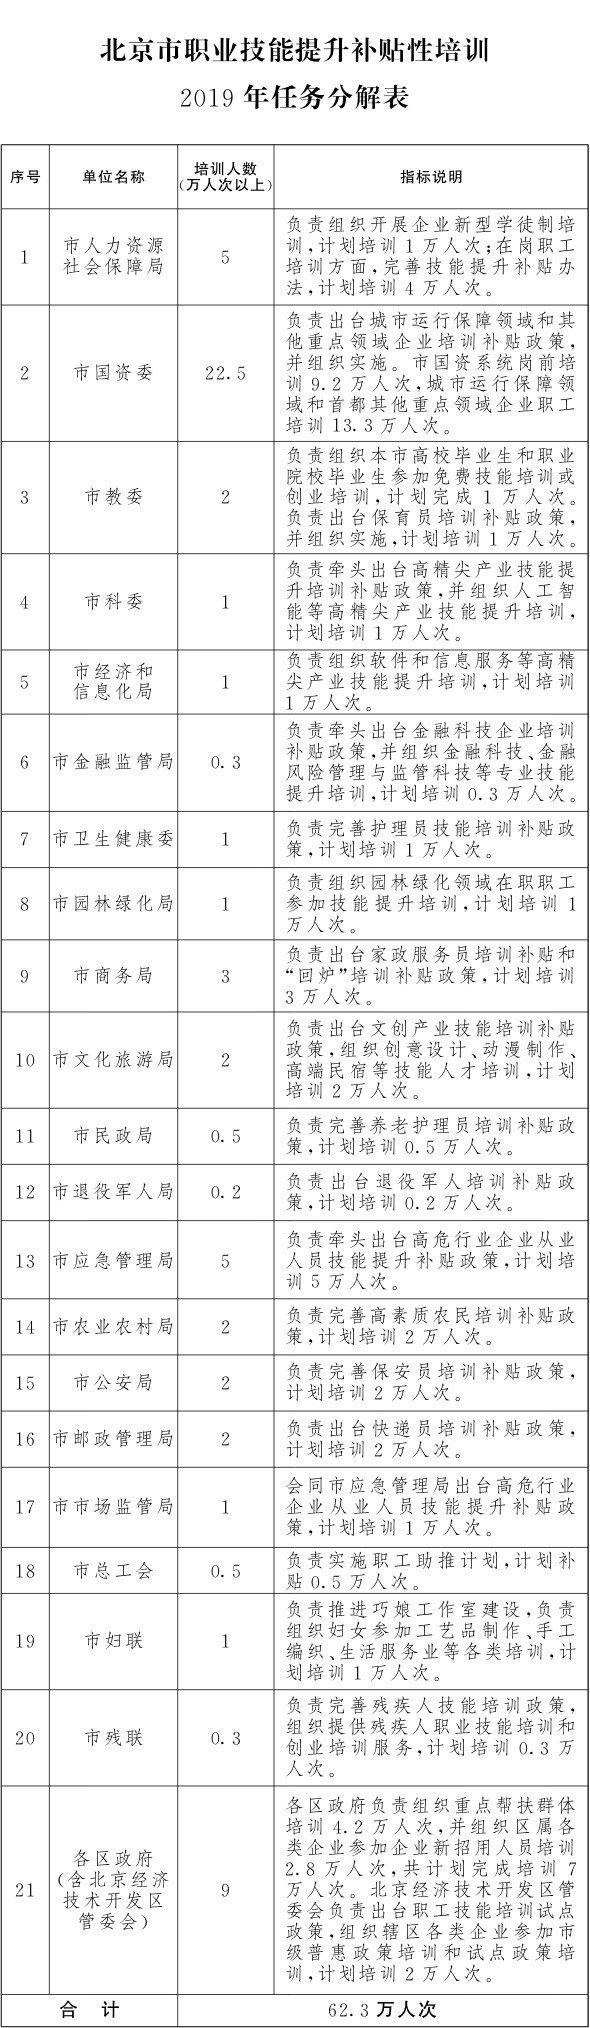 关于印发《北京市职业技能提升行动实施方案(2019-2021年)》的通知2.png